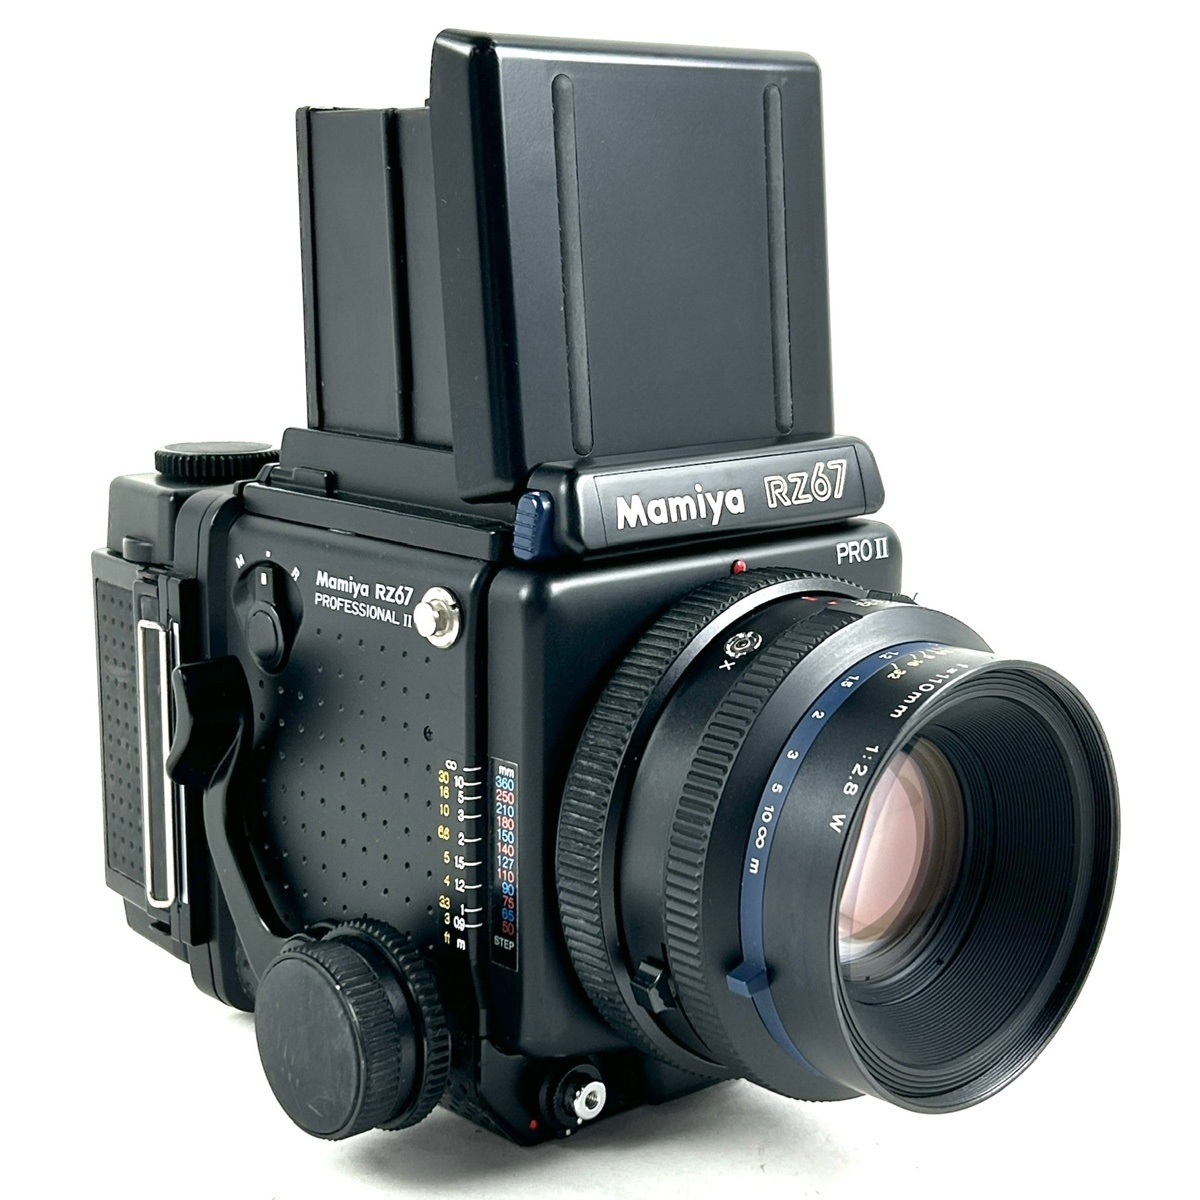 マミヤ Mamiya RZ67 PRO II + SEKOR Z 110mm F2.8 W 中判カメラ 【中古】の画像2